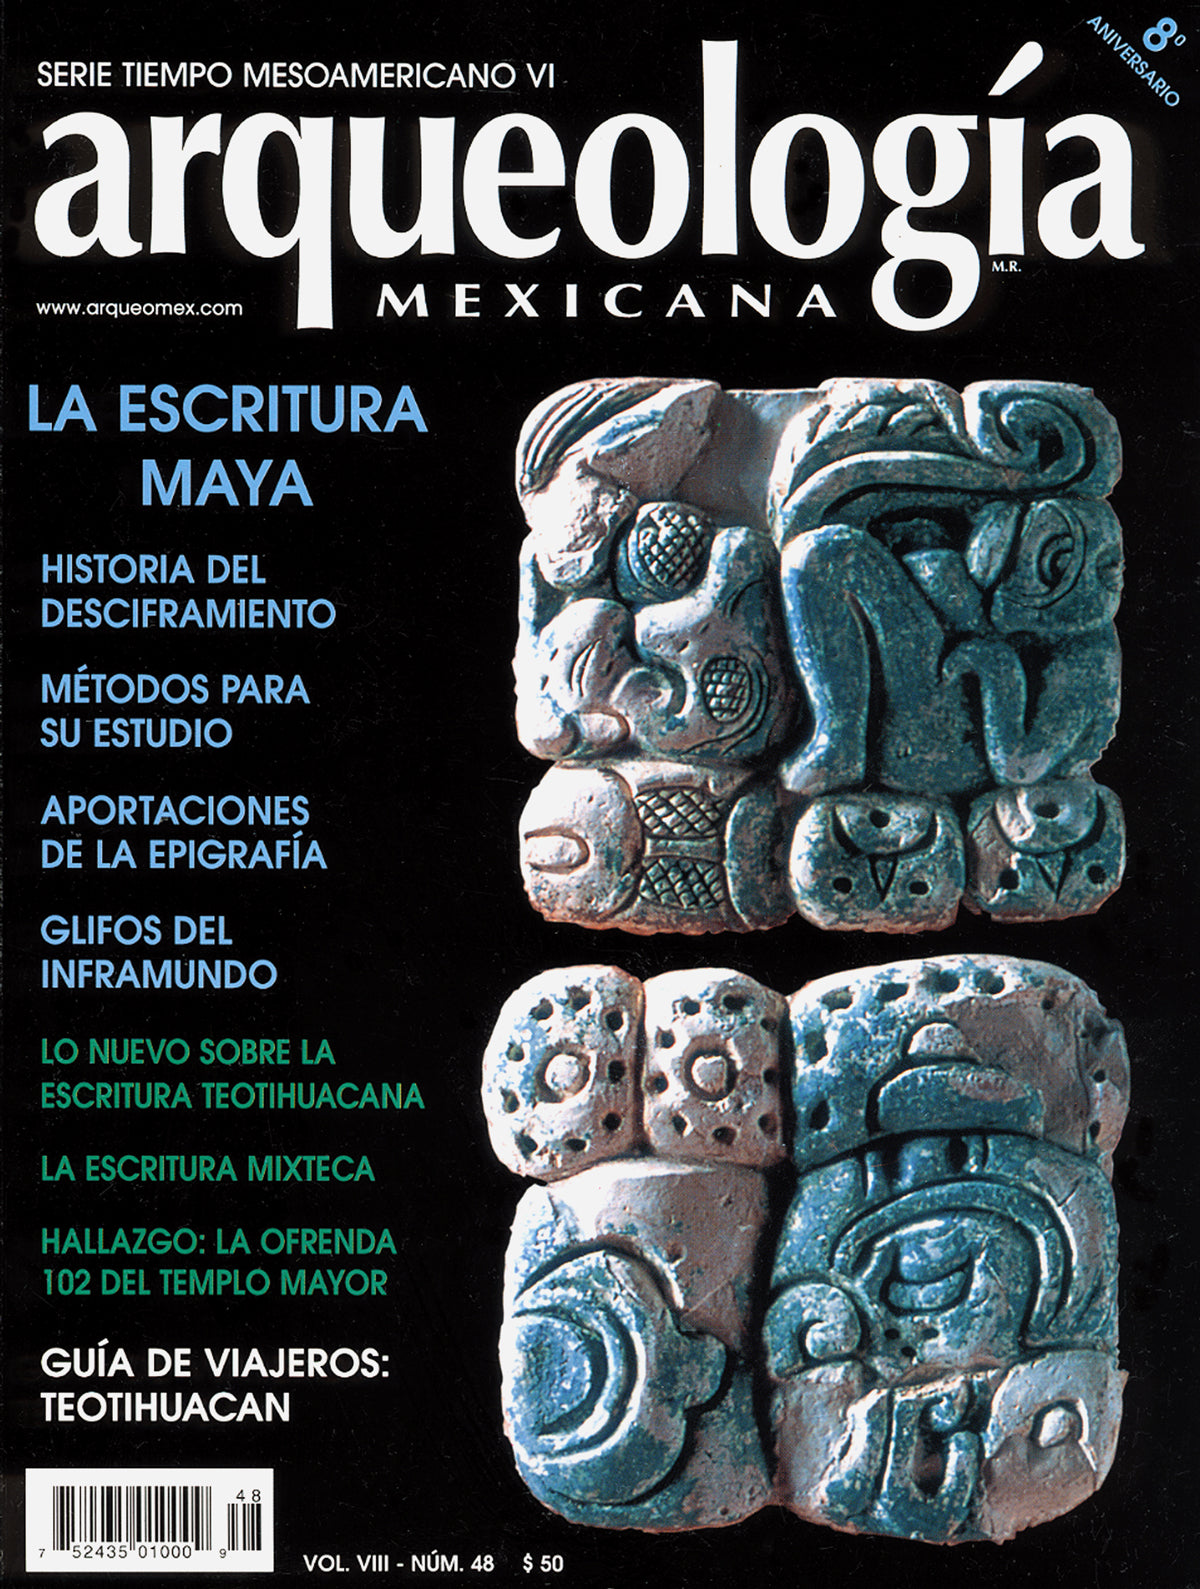 La escritura maya